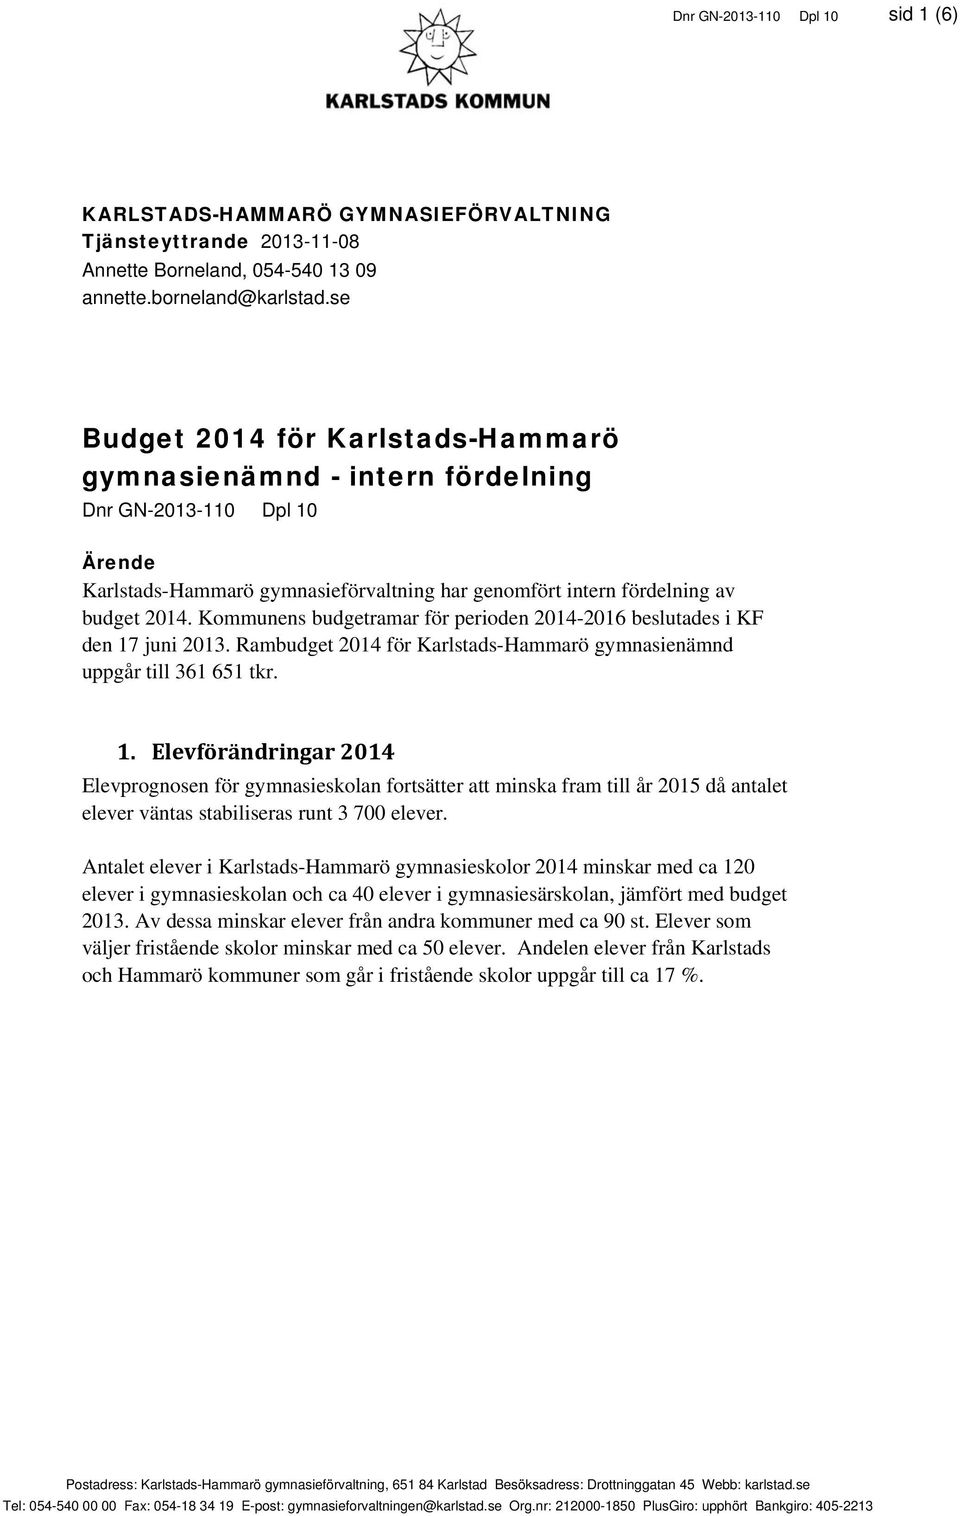 Kommunens budgetramar för perioden 2014-2016 beslutades i KF den 17